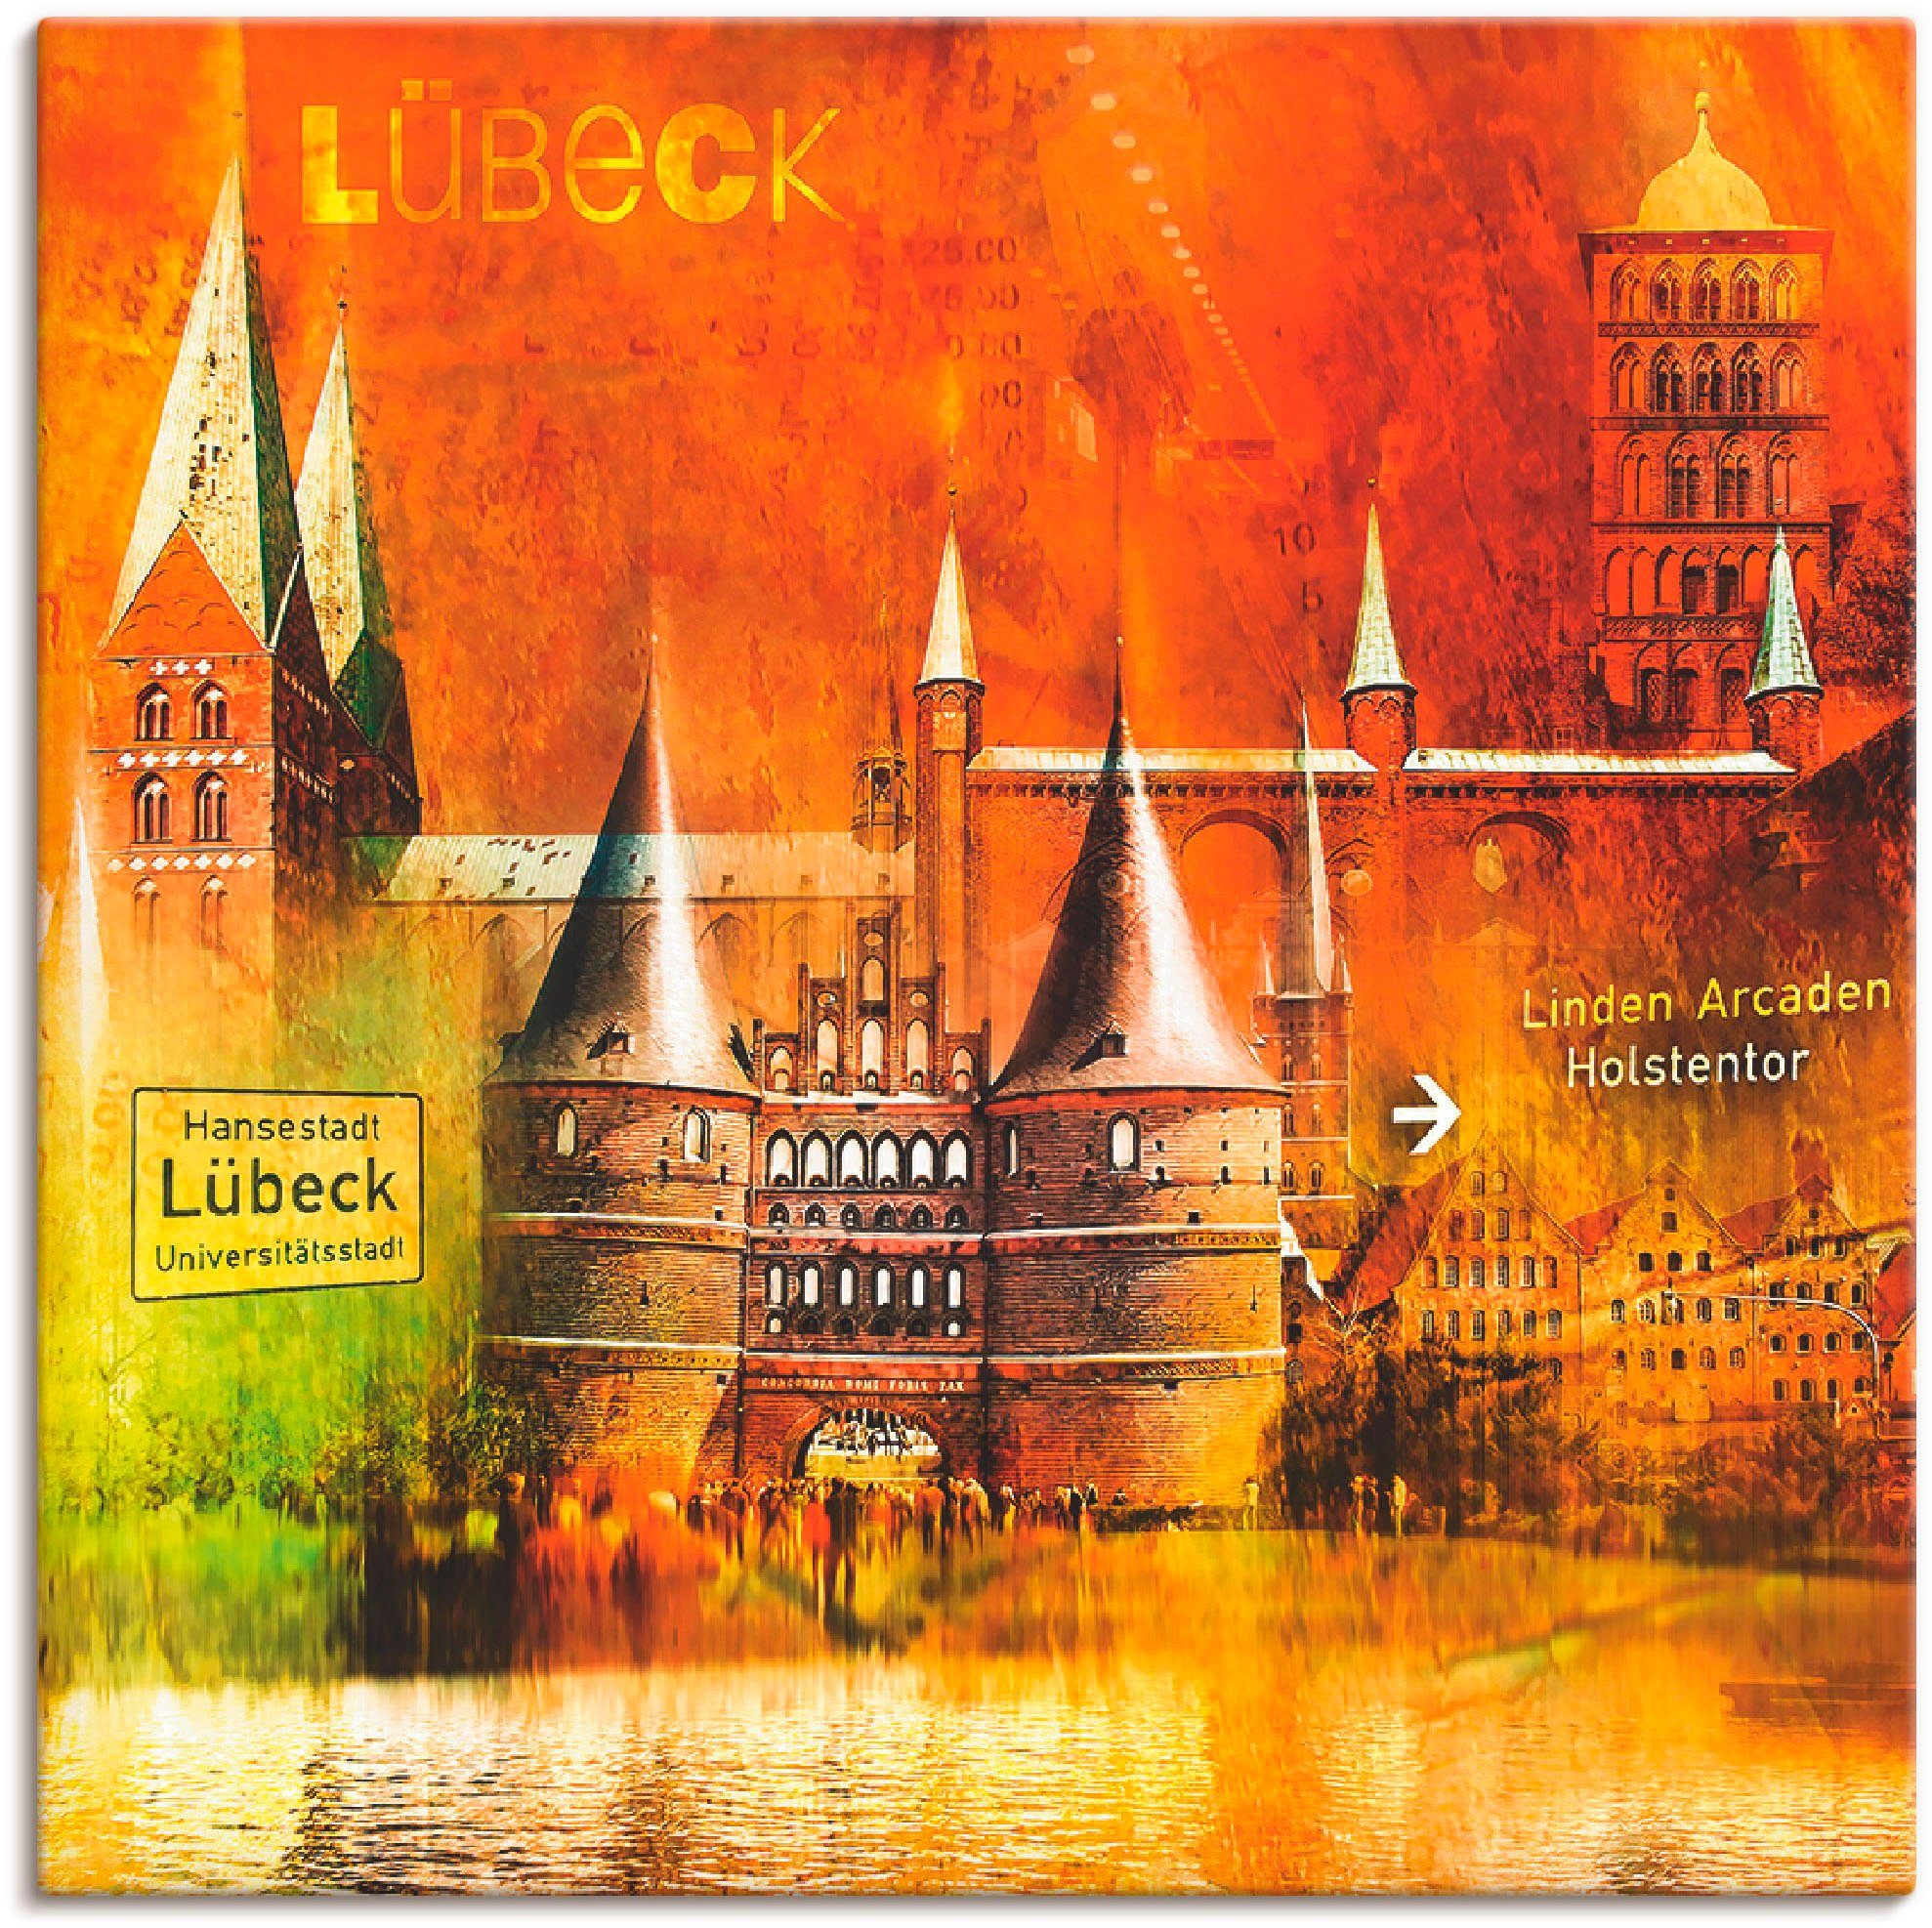 Artland Artprint Lübeck Hanzestad collage 04 in vele afmetingen & productsoorten -artprint op linnen, poster, muursticker / wandfolie ook geschikt voor de badkamer (1 stuk)